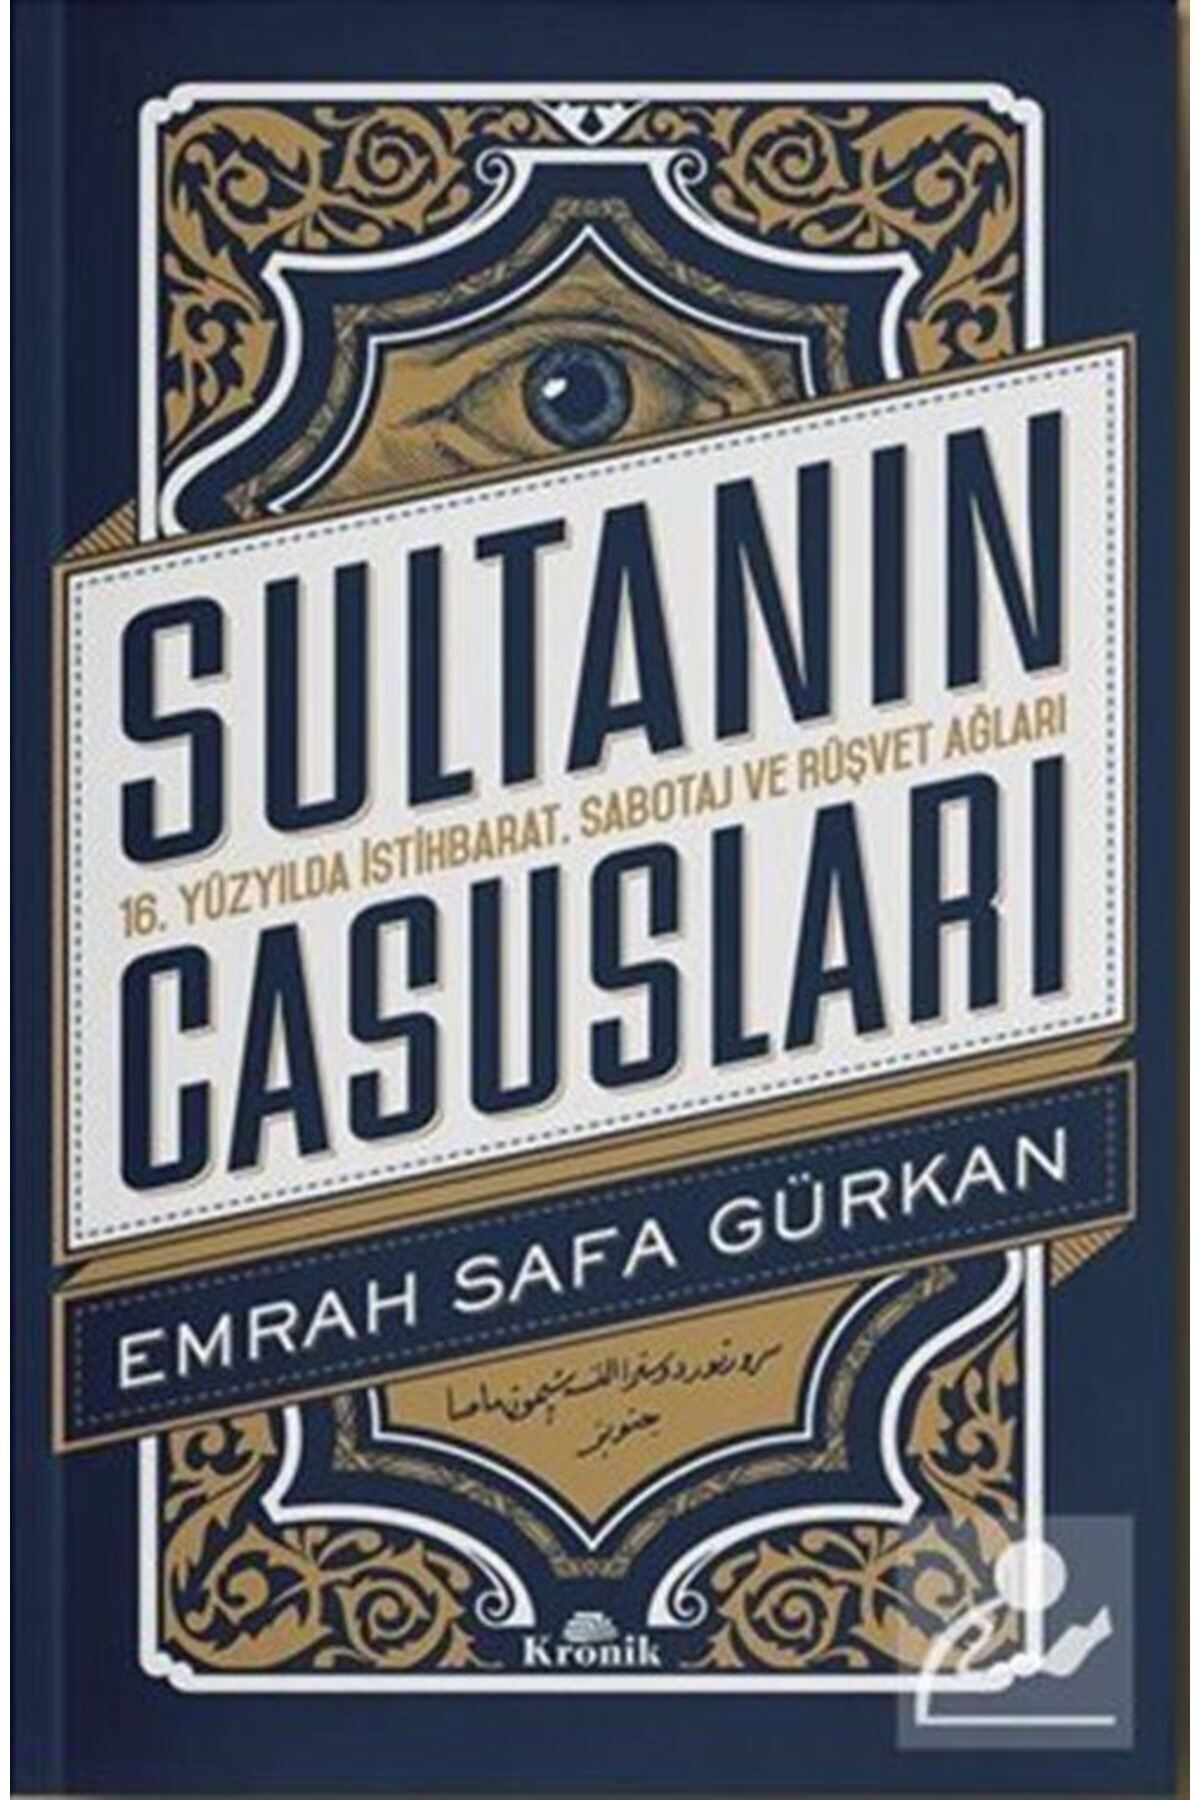 Kronik Kitap Sultanın Casusları & 16. Yüzyılda Istihbarat, Sabotaj Ve Rüşvet Ağları